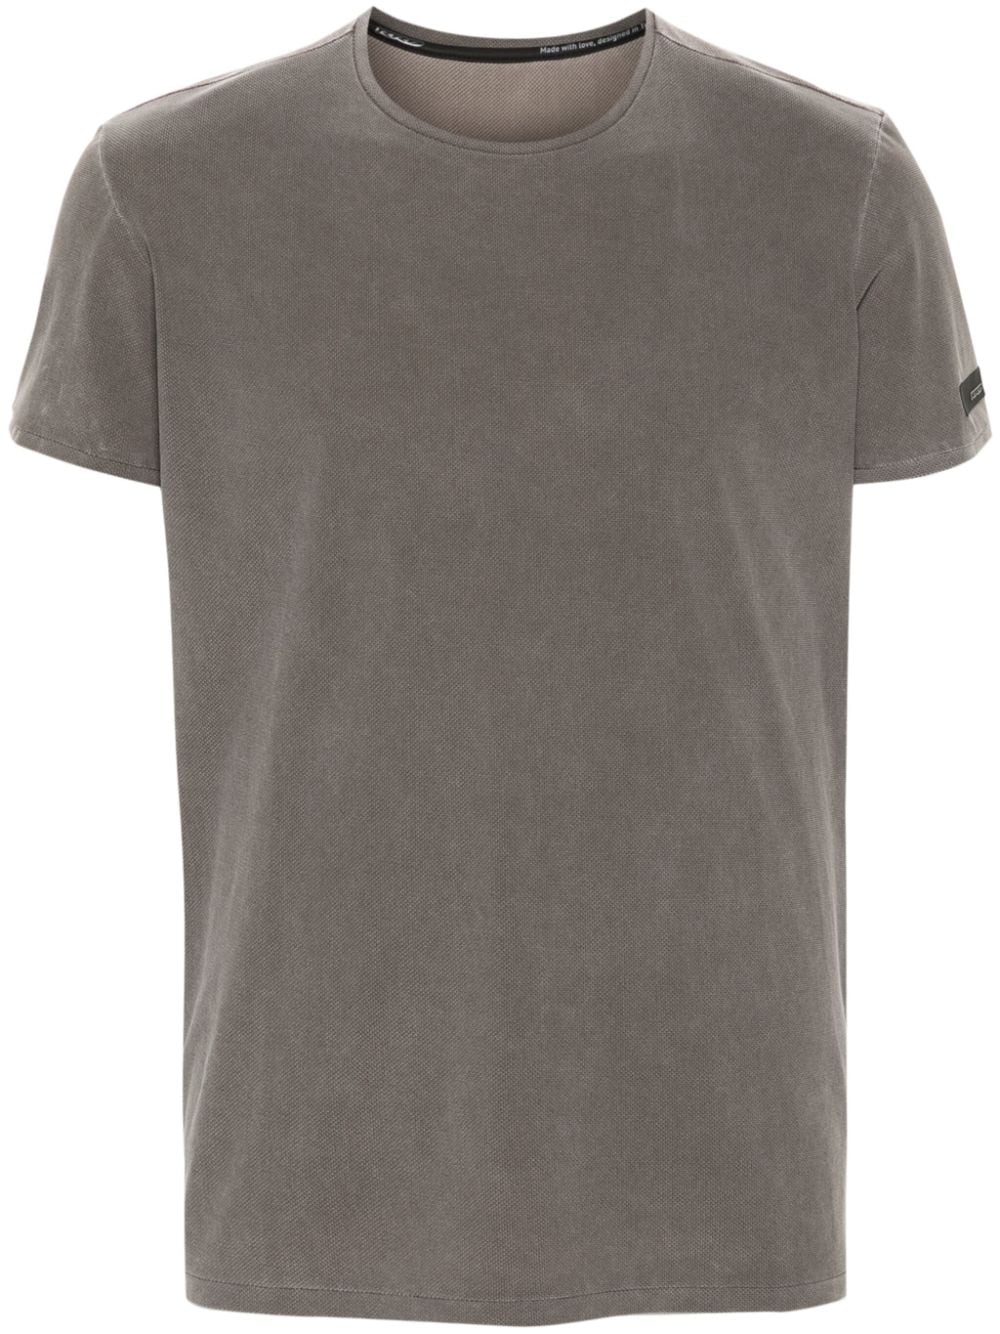 piqué-weave T-shirt